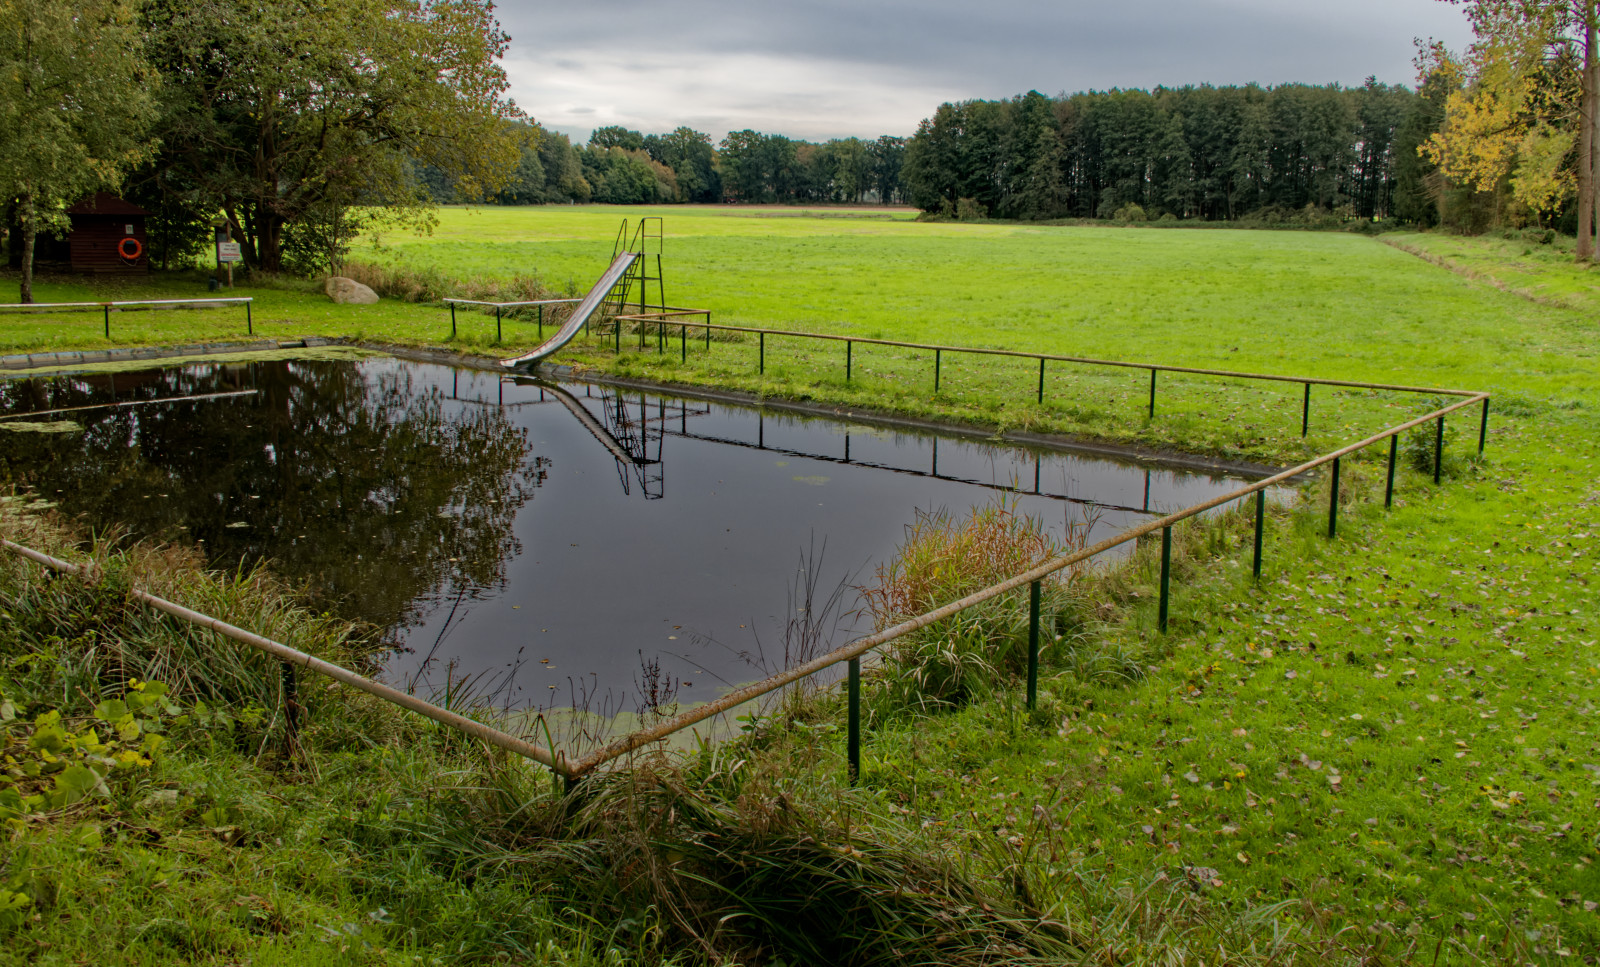 Ein Freibad oder rechteckig gefasster Teich mitten in einer Wiese,rundum umzäunt, auf einer Seite eine alte Rutsche ins Wasser.